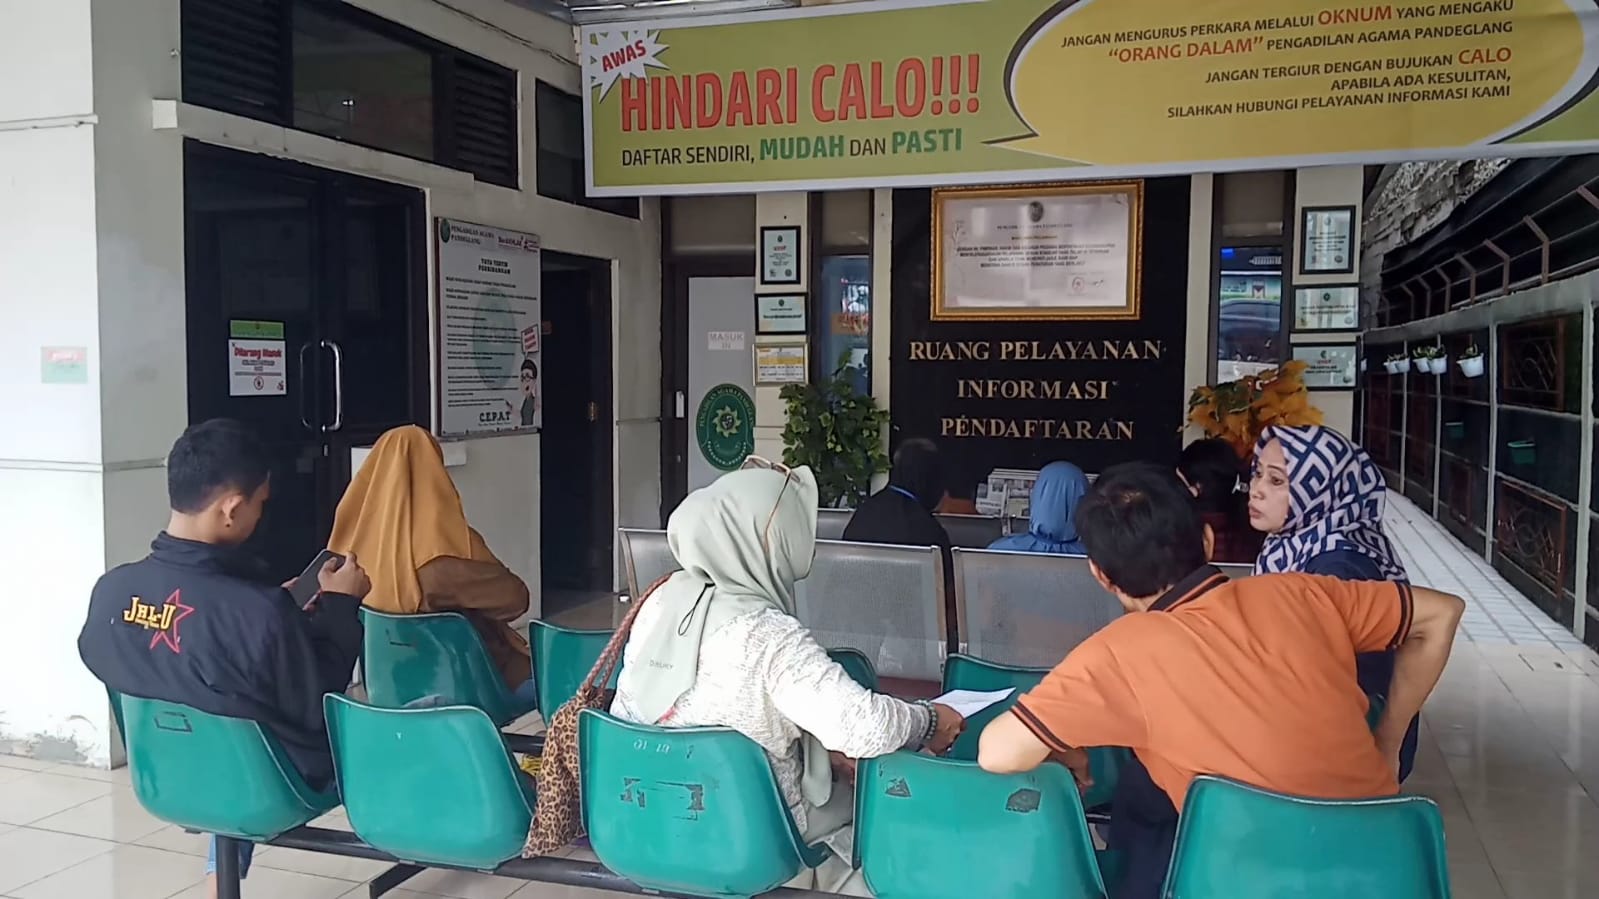 Tercatat 314 Wanita di Pandeglang Pilih Jadi Janda, Lulusan S1 Dominasi Gugatan Perceraian